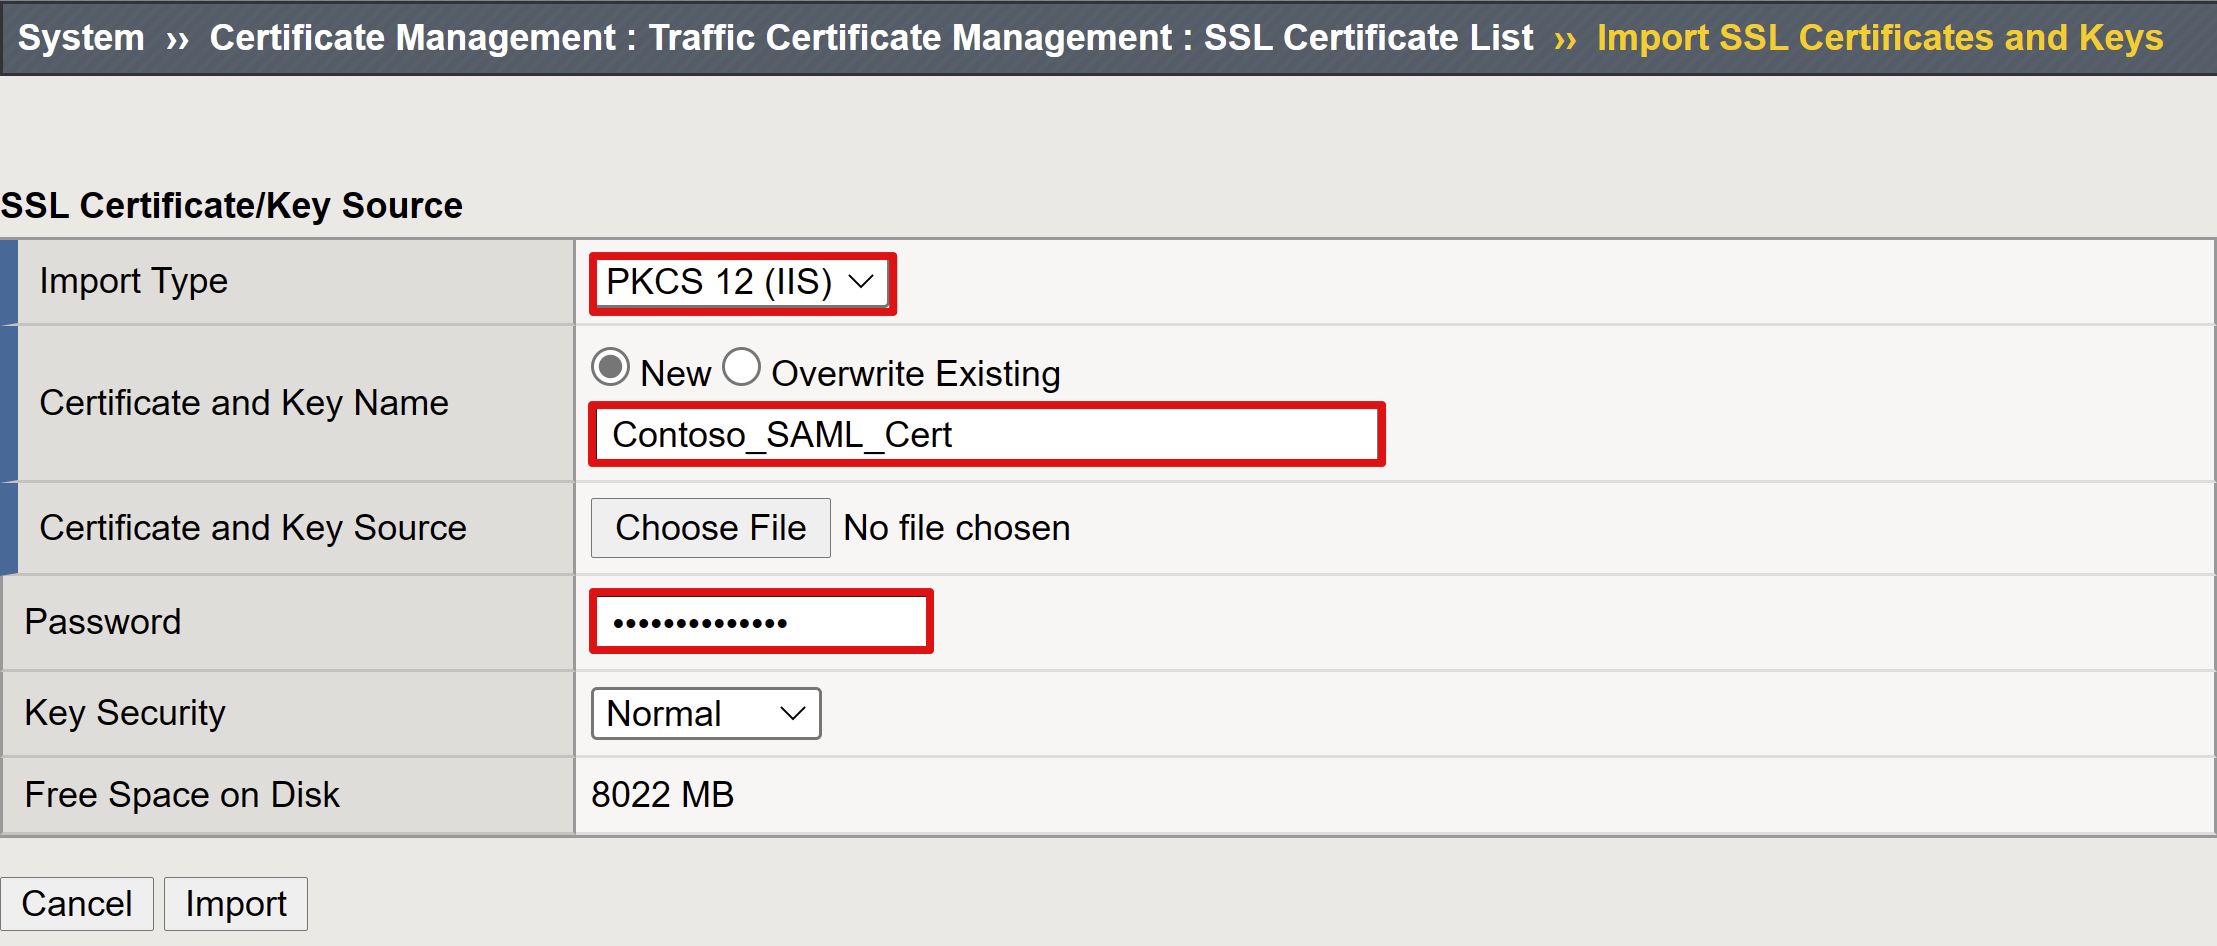 Captura de pantalla de las opciones y selecciones para origen de la clave y certificado SSL.